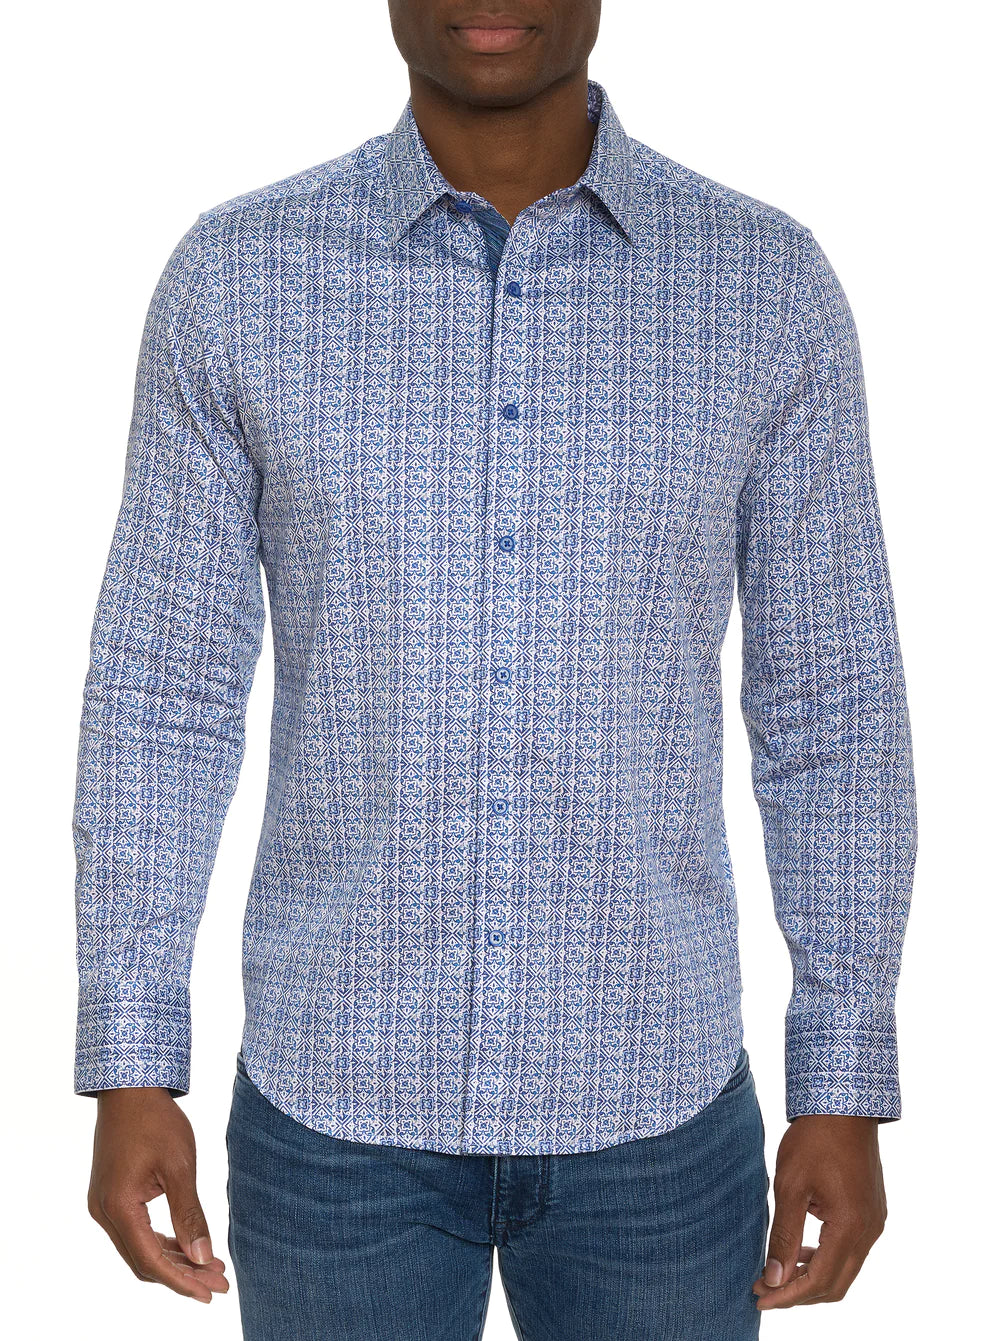 Robert Graham Dolma Button Up L/S Dress Shirt - Blue - 1 - Tops - Button Up Dress Shirt